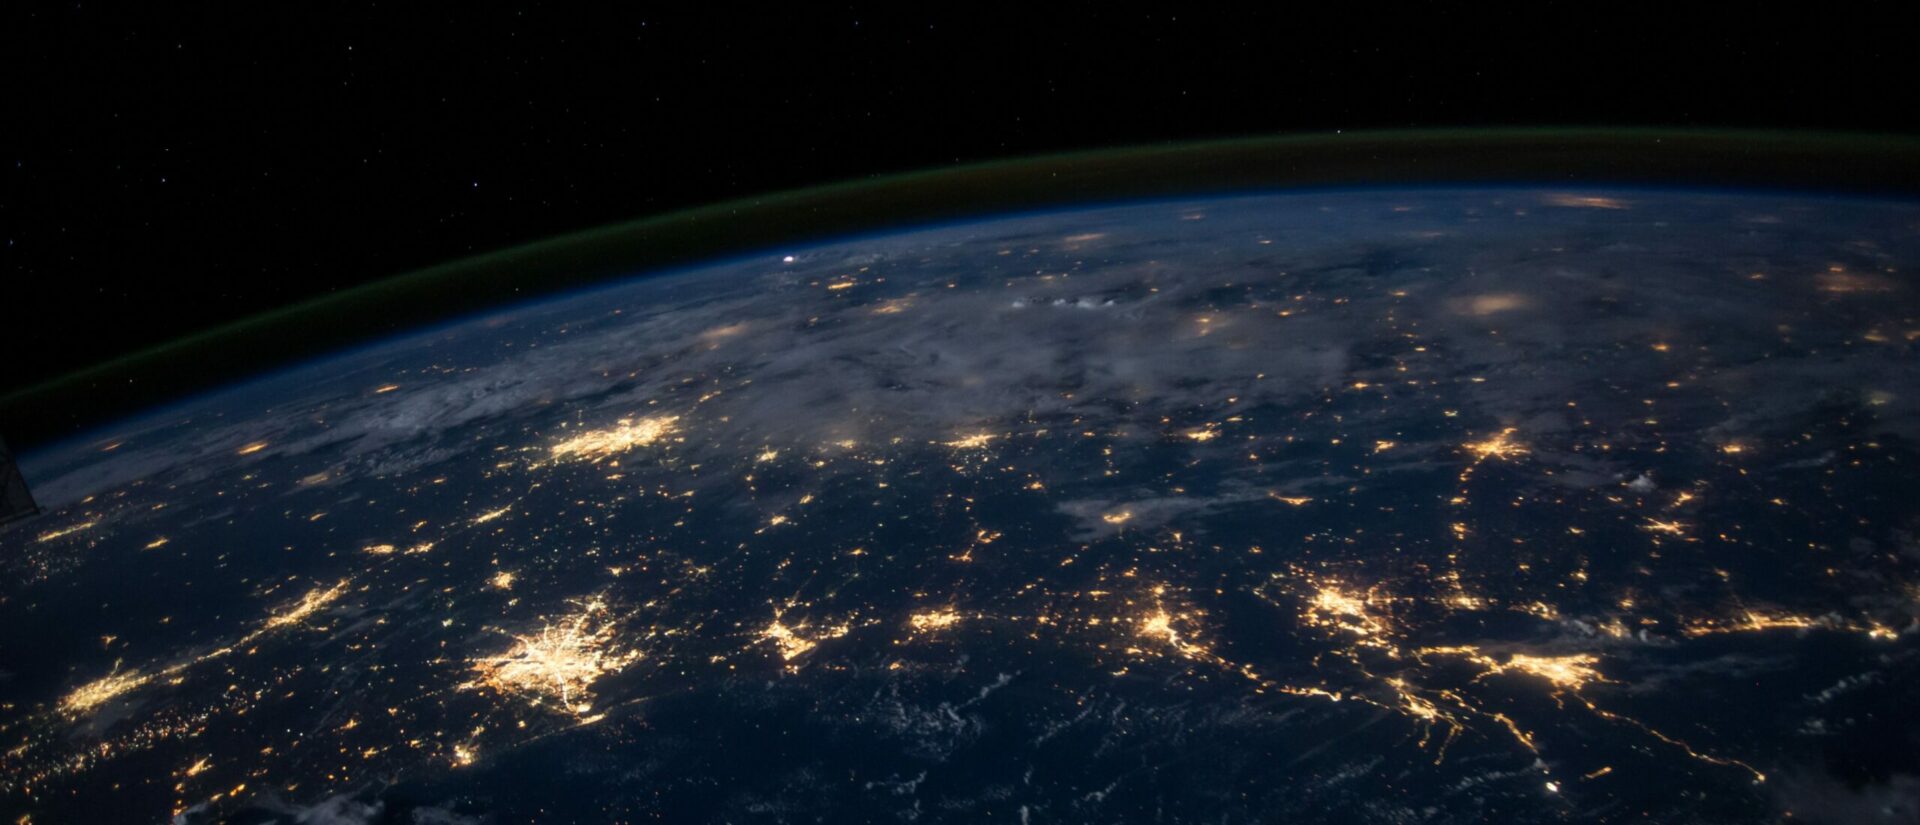 La 5G permettra de récolter plus facilement les données de milliards de personnes (Photo by NASA on Unsplash)